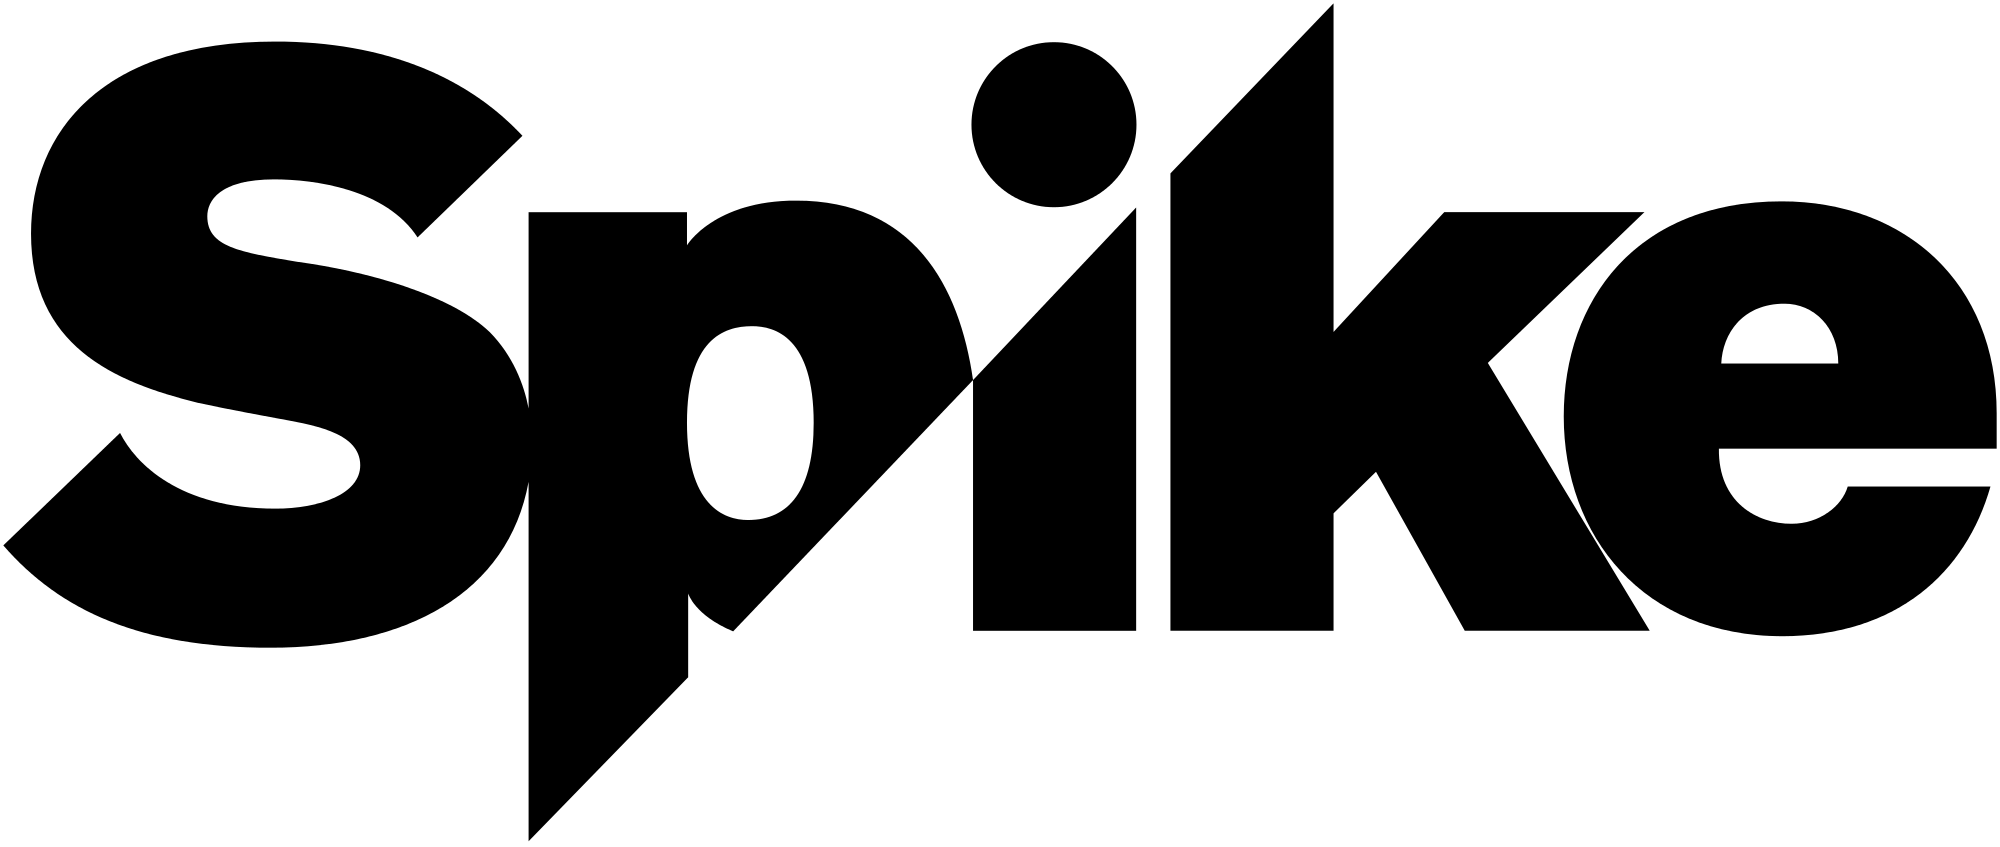 Spike Logo - File:Spike logo 2015.svg - Wikimedia Commons